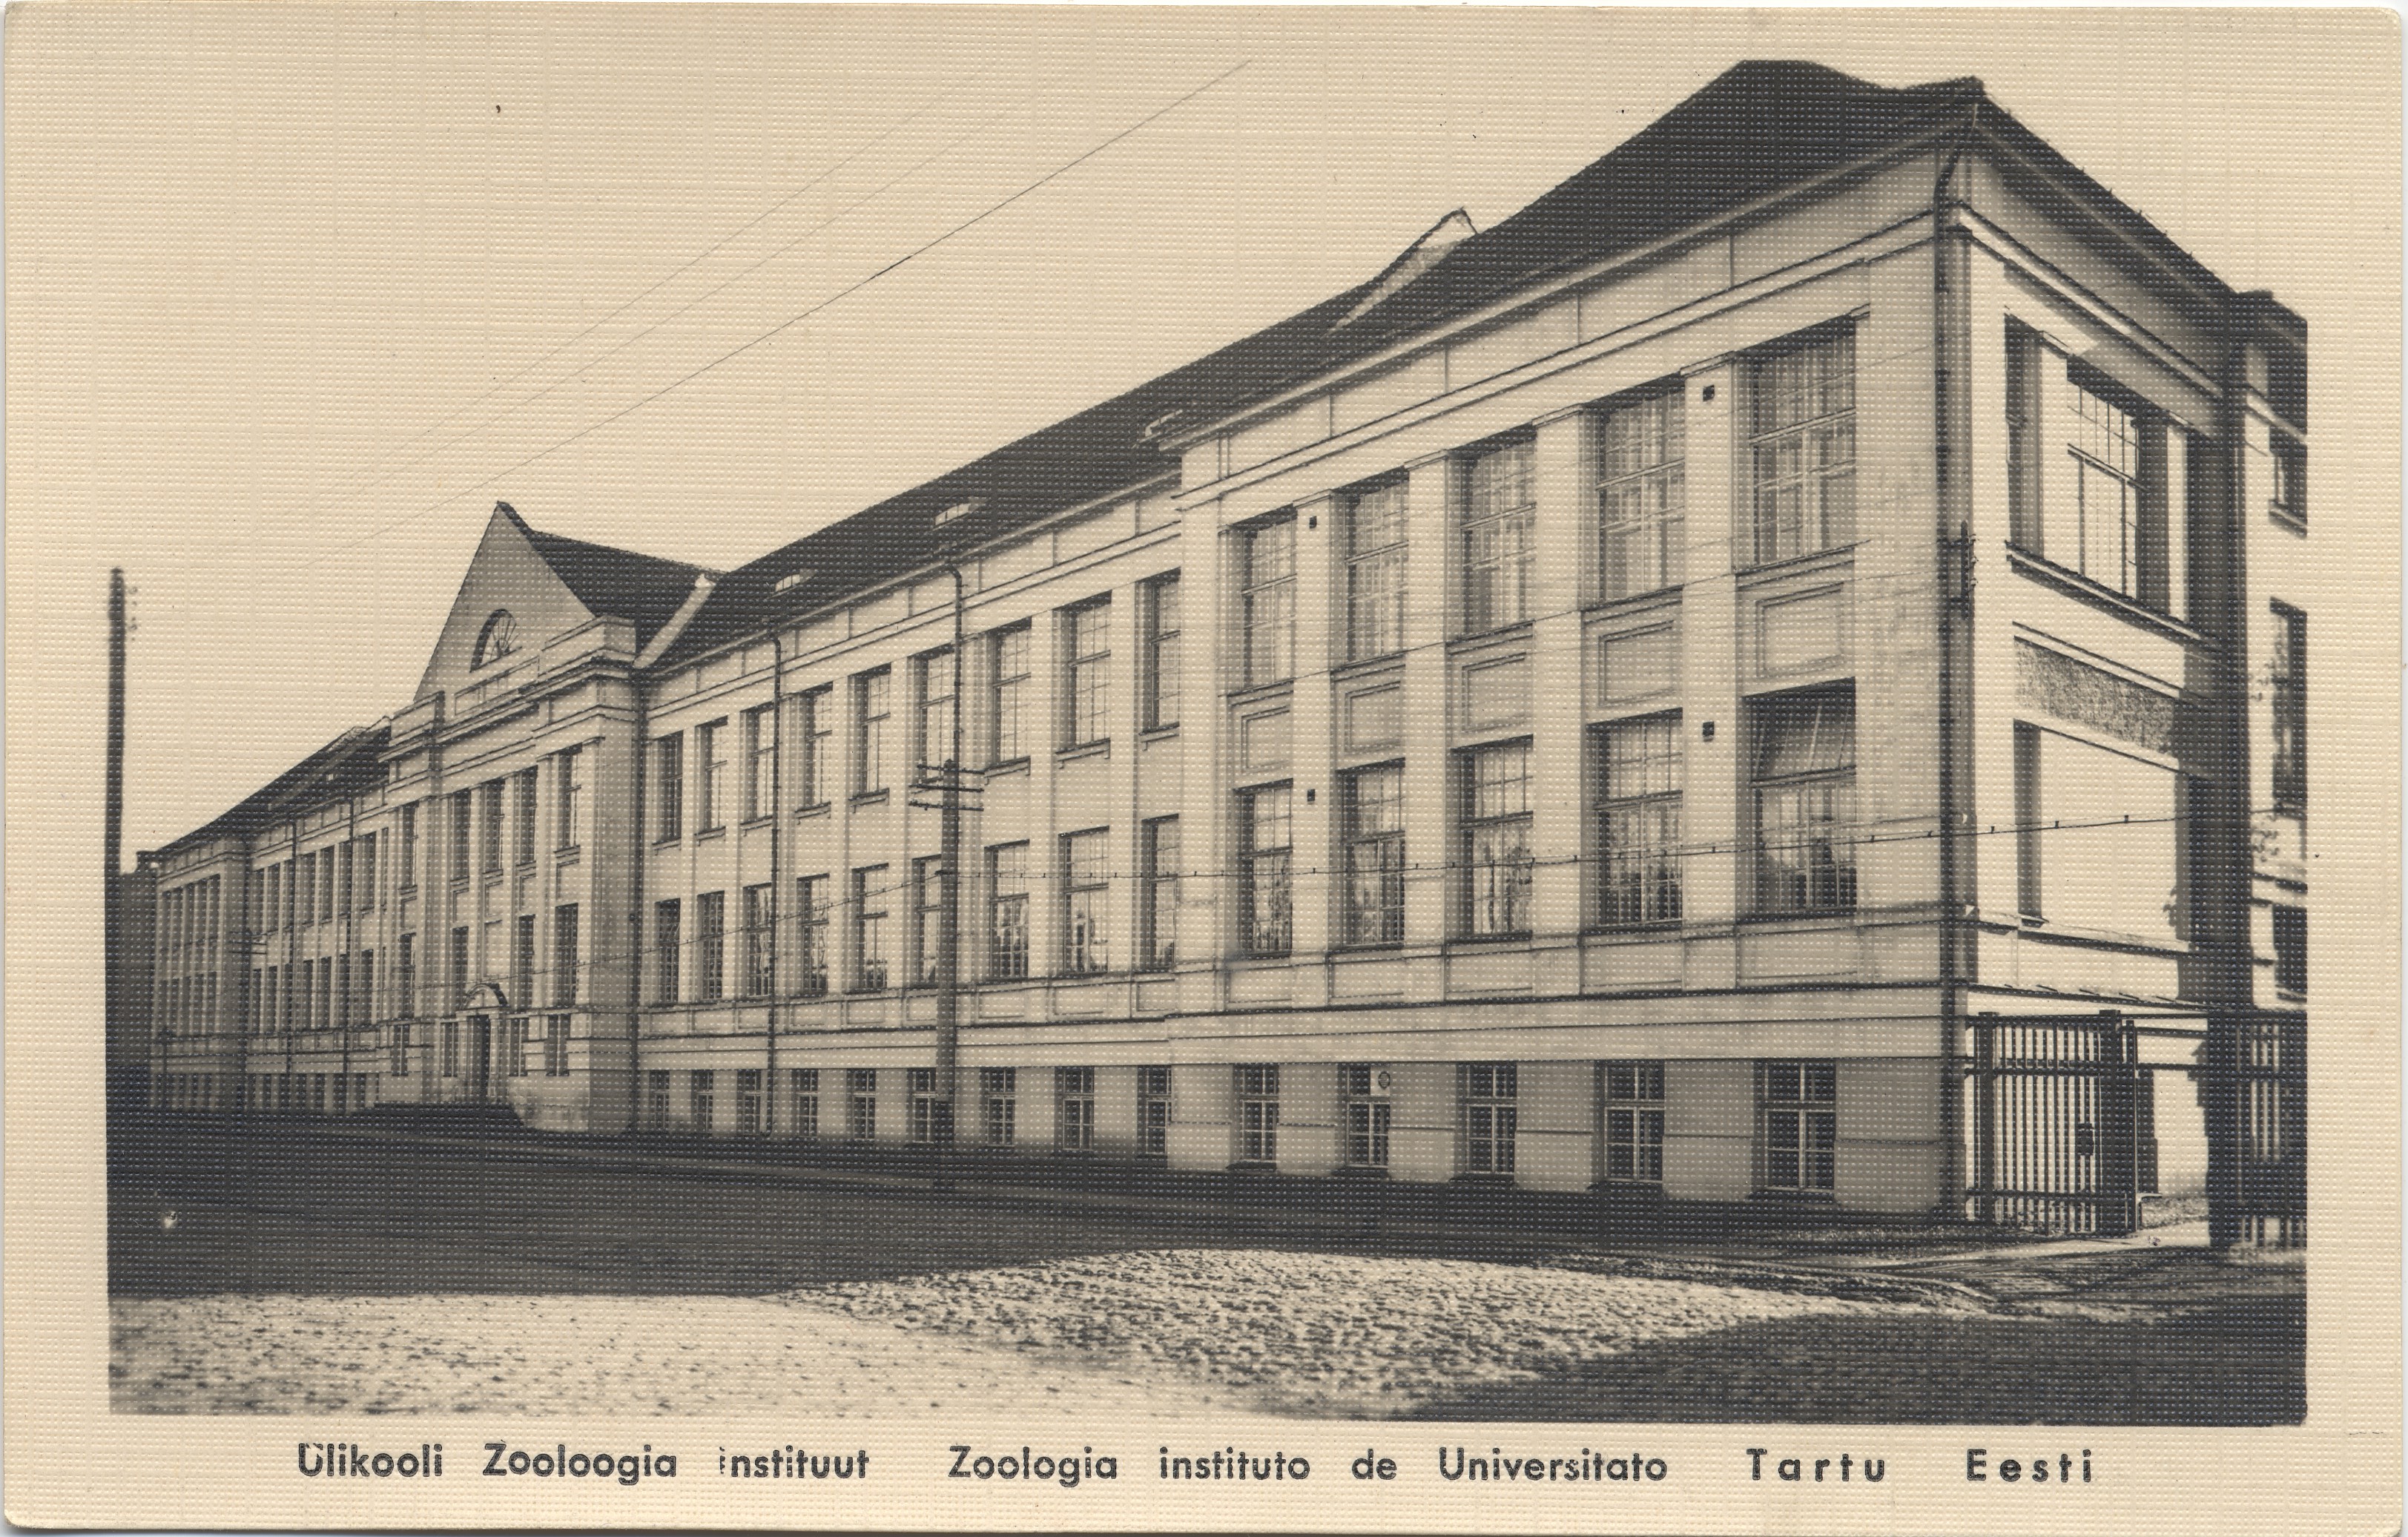 Tartu Eesti : University Institute of Zoology = Institute of Zoology de Universitato